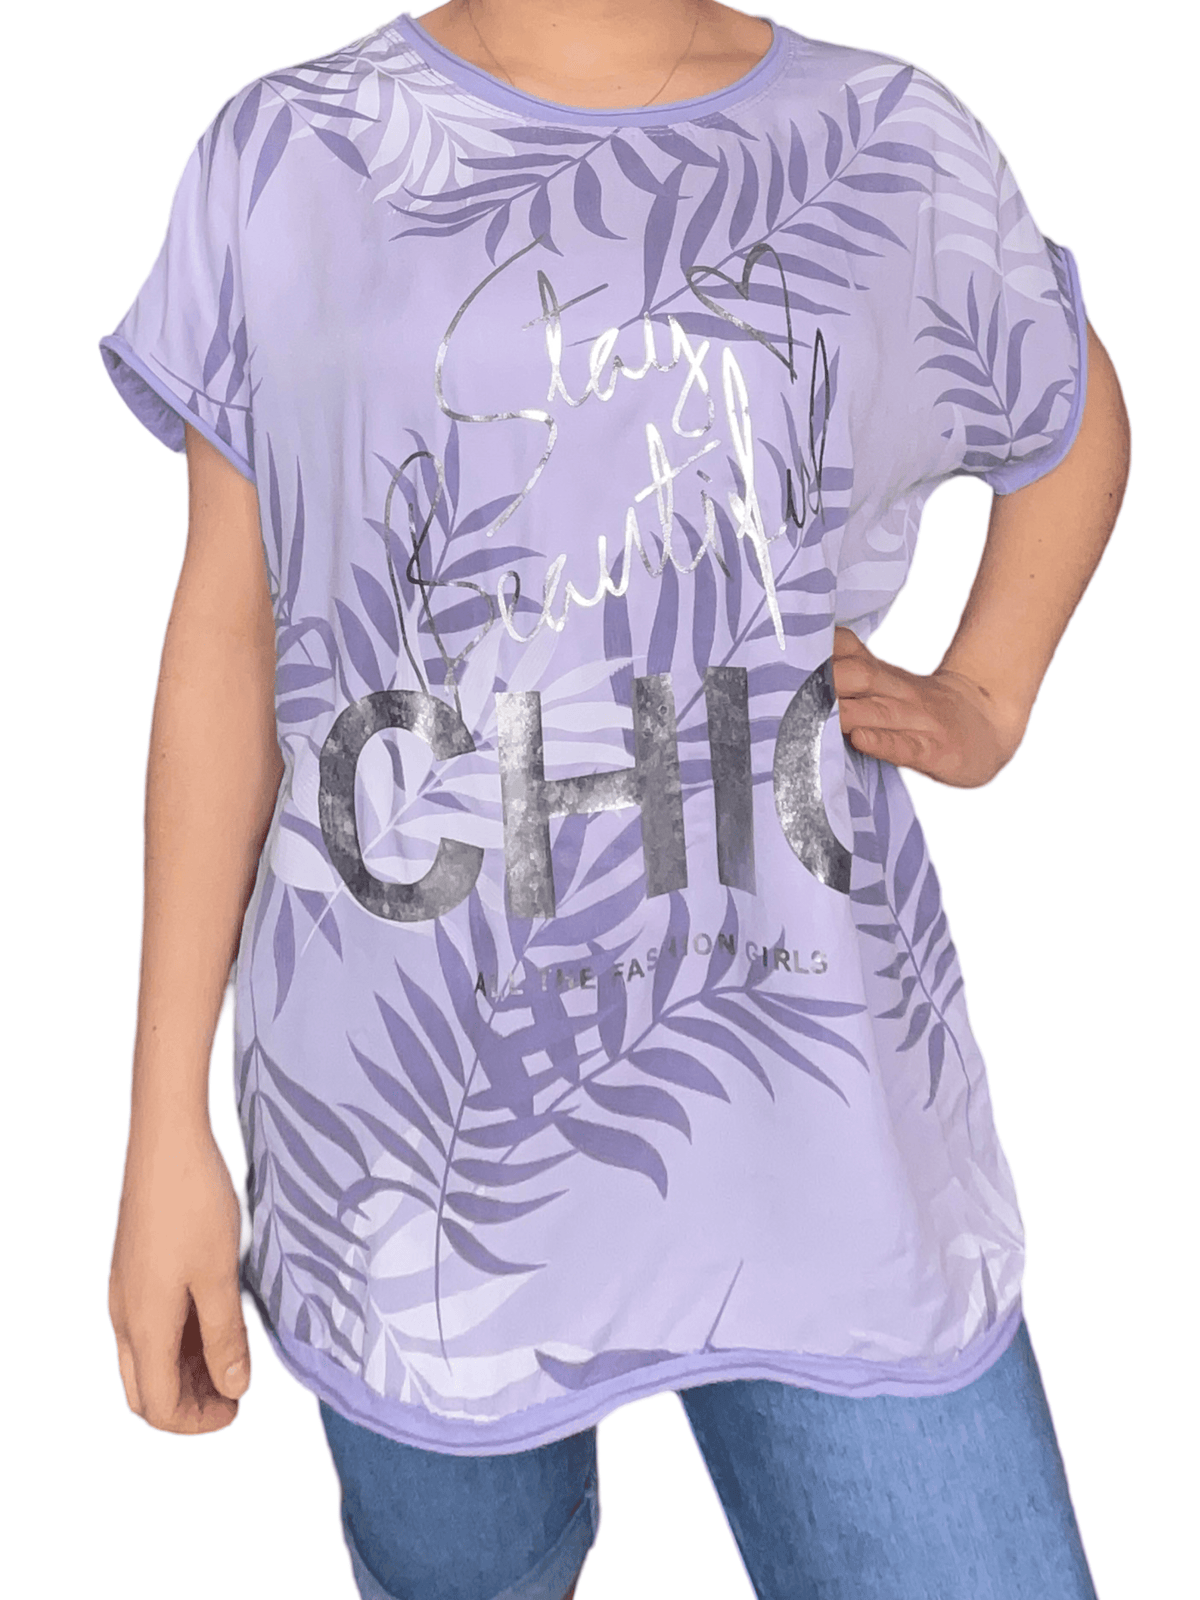 T-shirt lilas pour femme avec imprimé de feuilles porté over size.